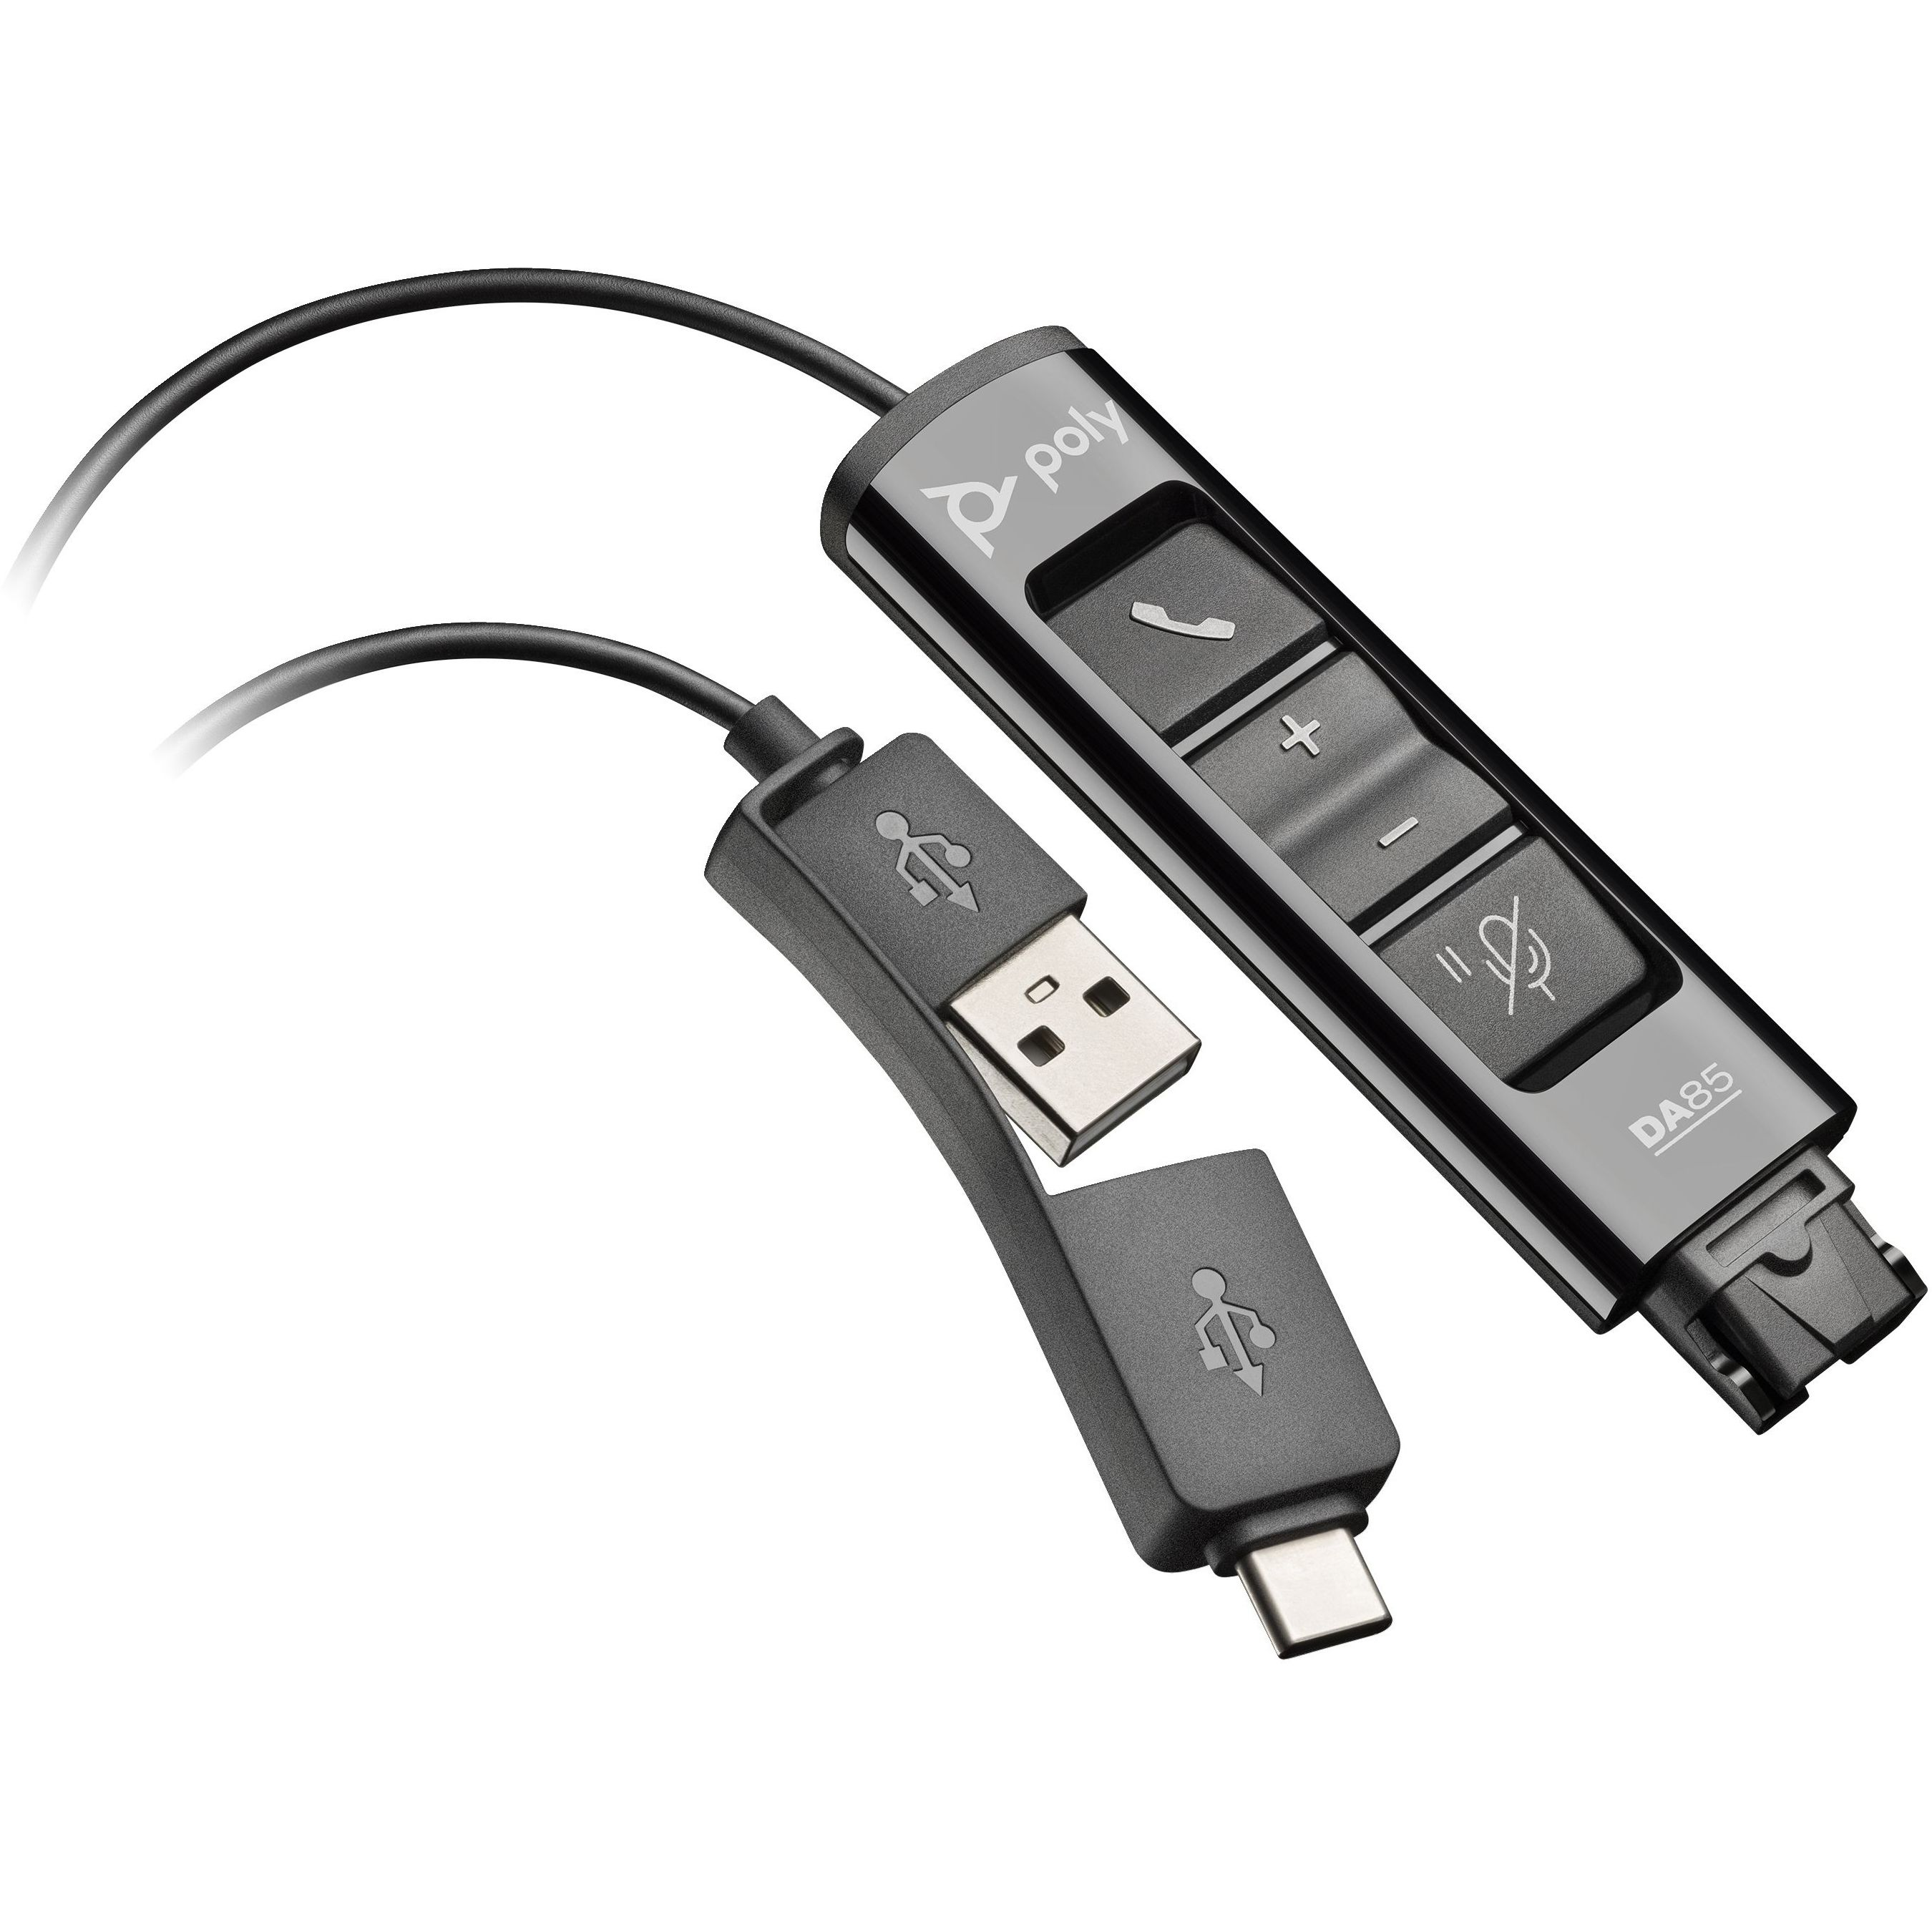 Переходник Poly DA85 USB > QD со встроенным пультом управления для гарнитур EncorePro, USB-A, USB-C, черный фото 1